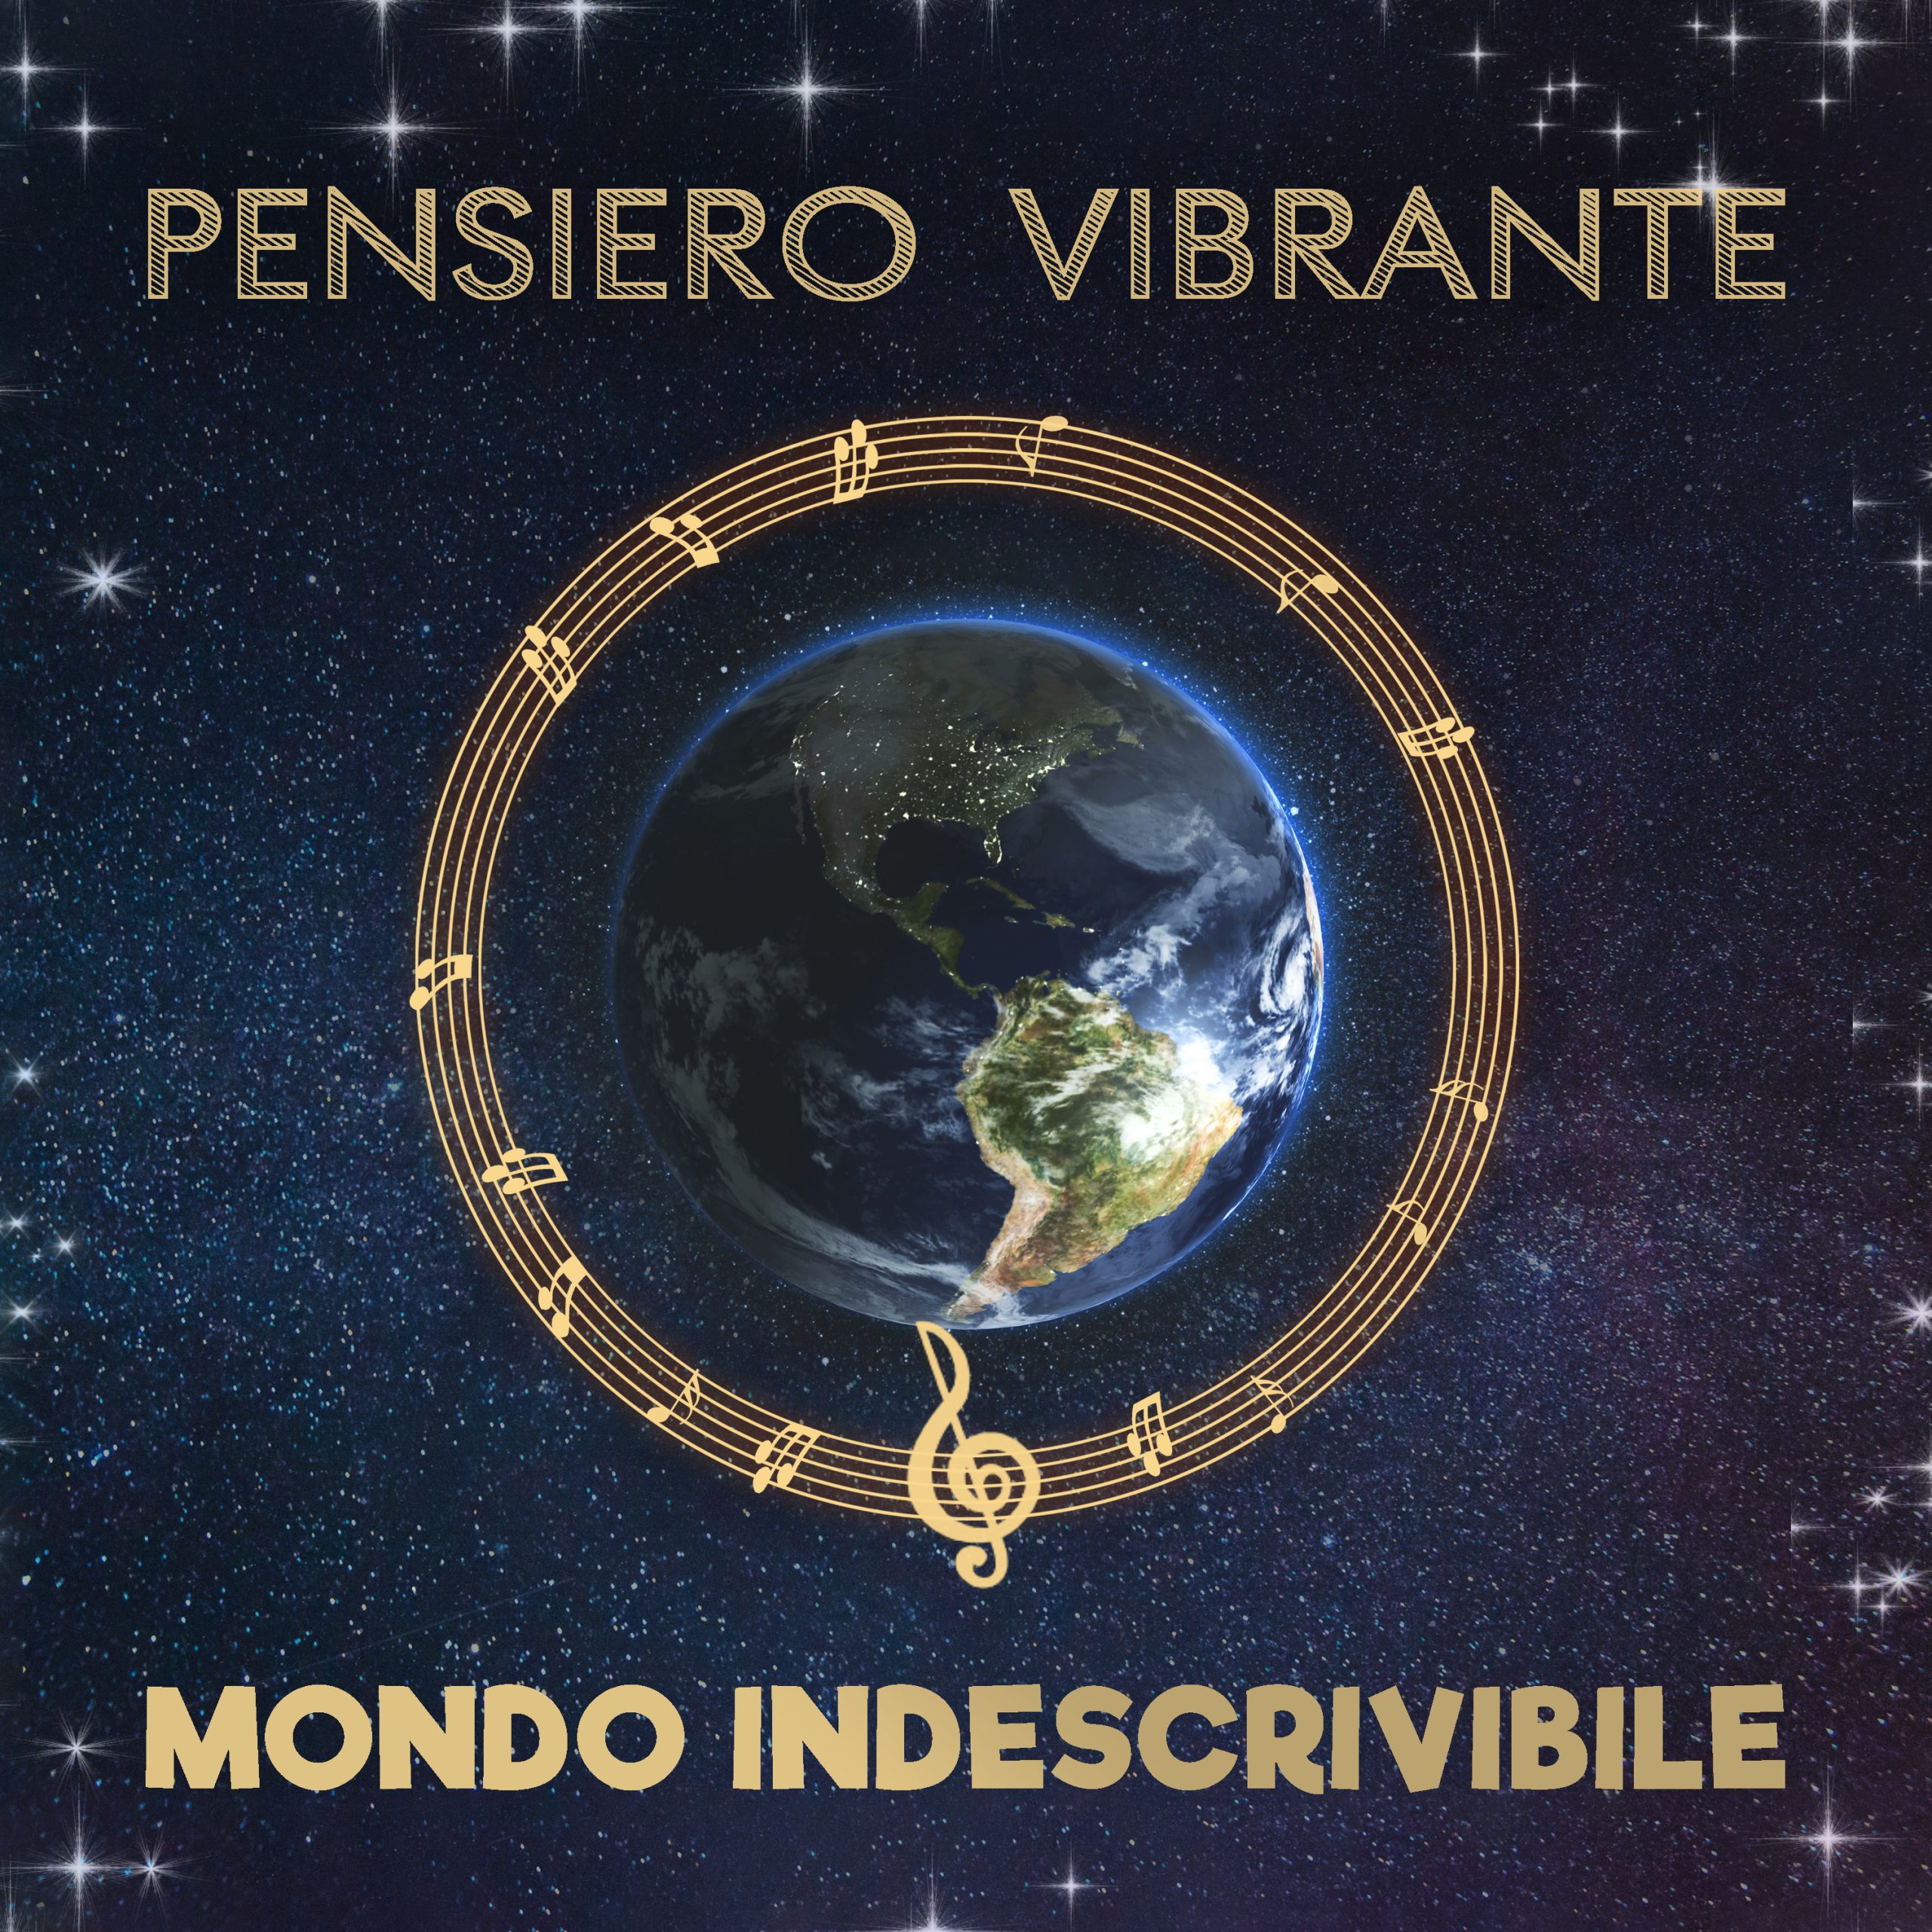 Pensiero-Vibrante-Mondo-indescribile-COVER-scaled-2.jpg